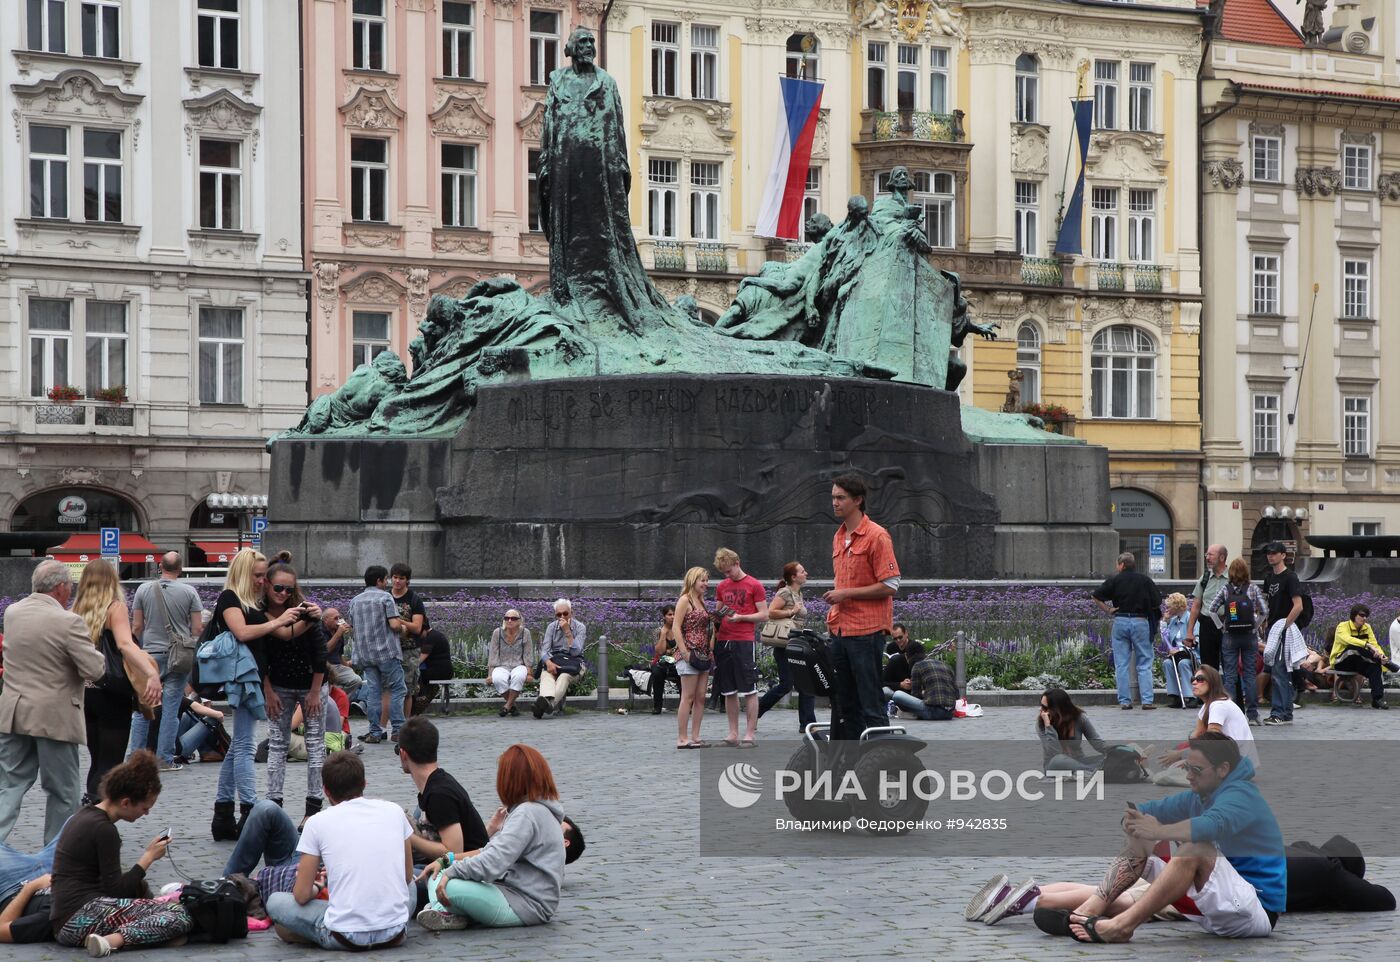 У памятника Яну Гусу на Староместской площади в Праге